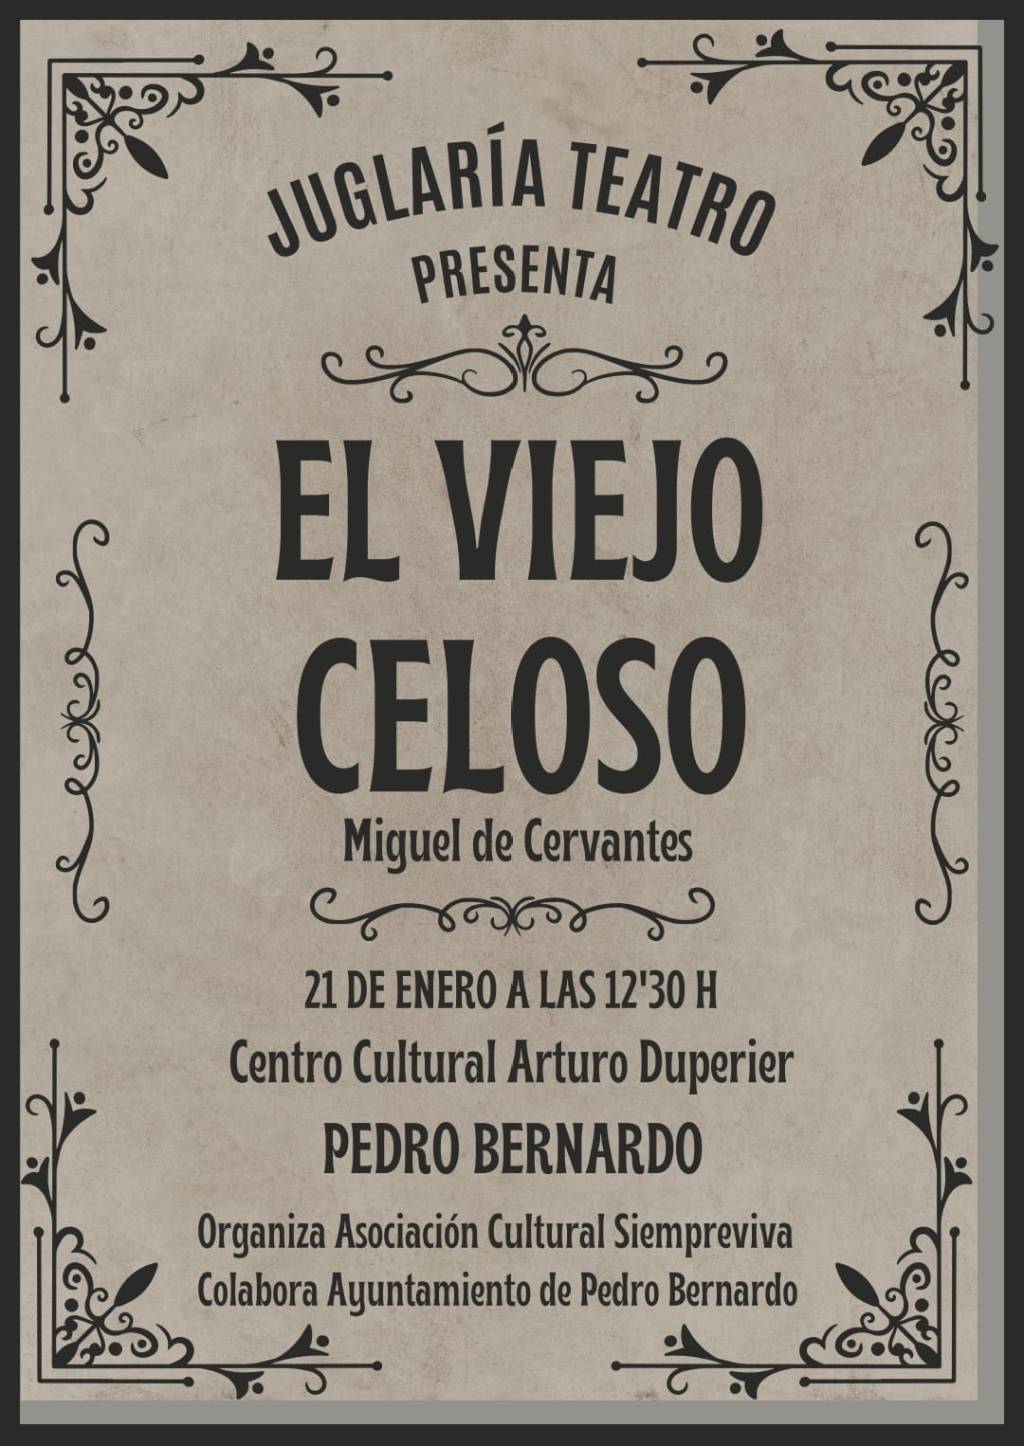 Teatro «El viejo celoso» en Pedro Bernardo